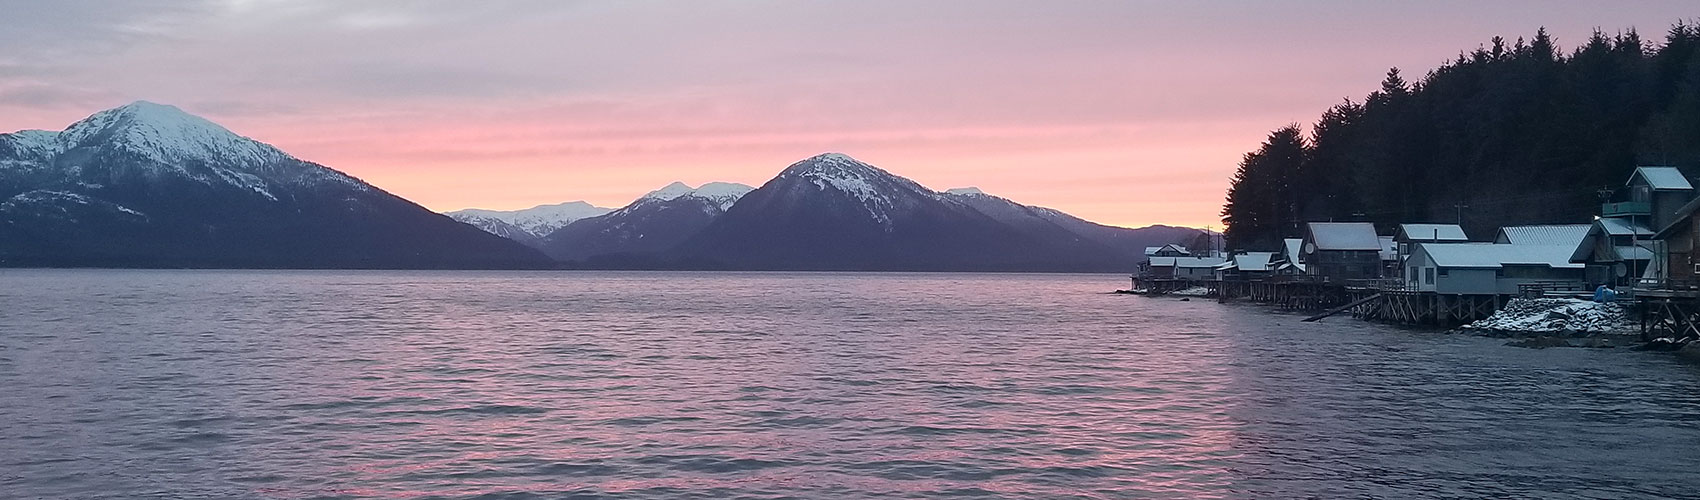 Alaskan sunset on the water in Tenakee